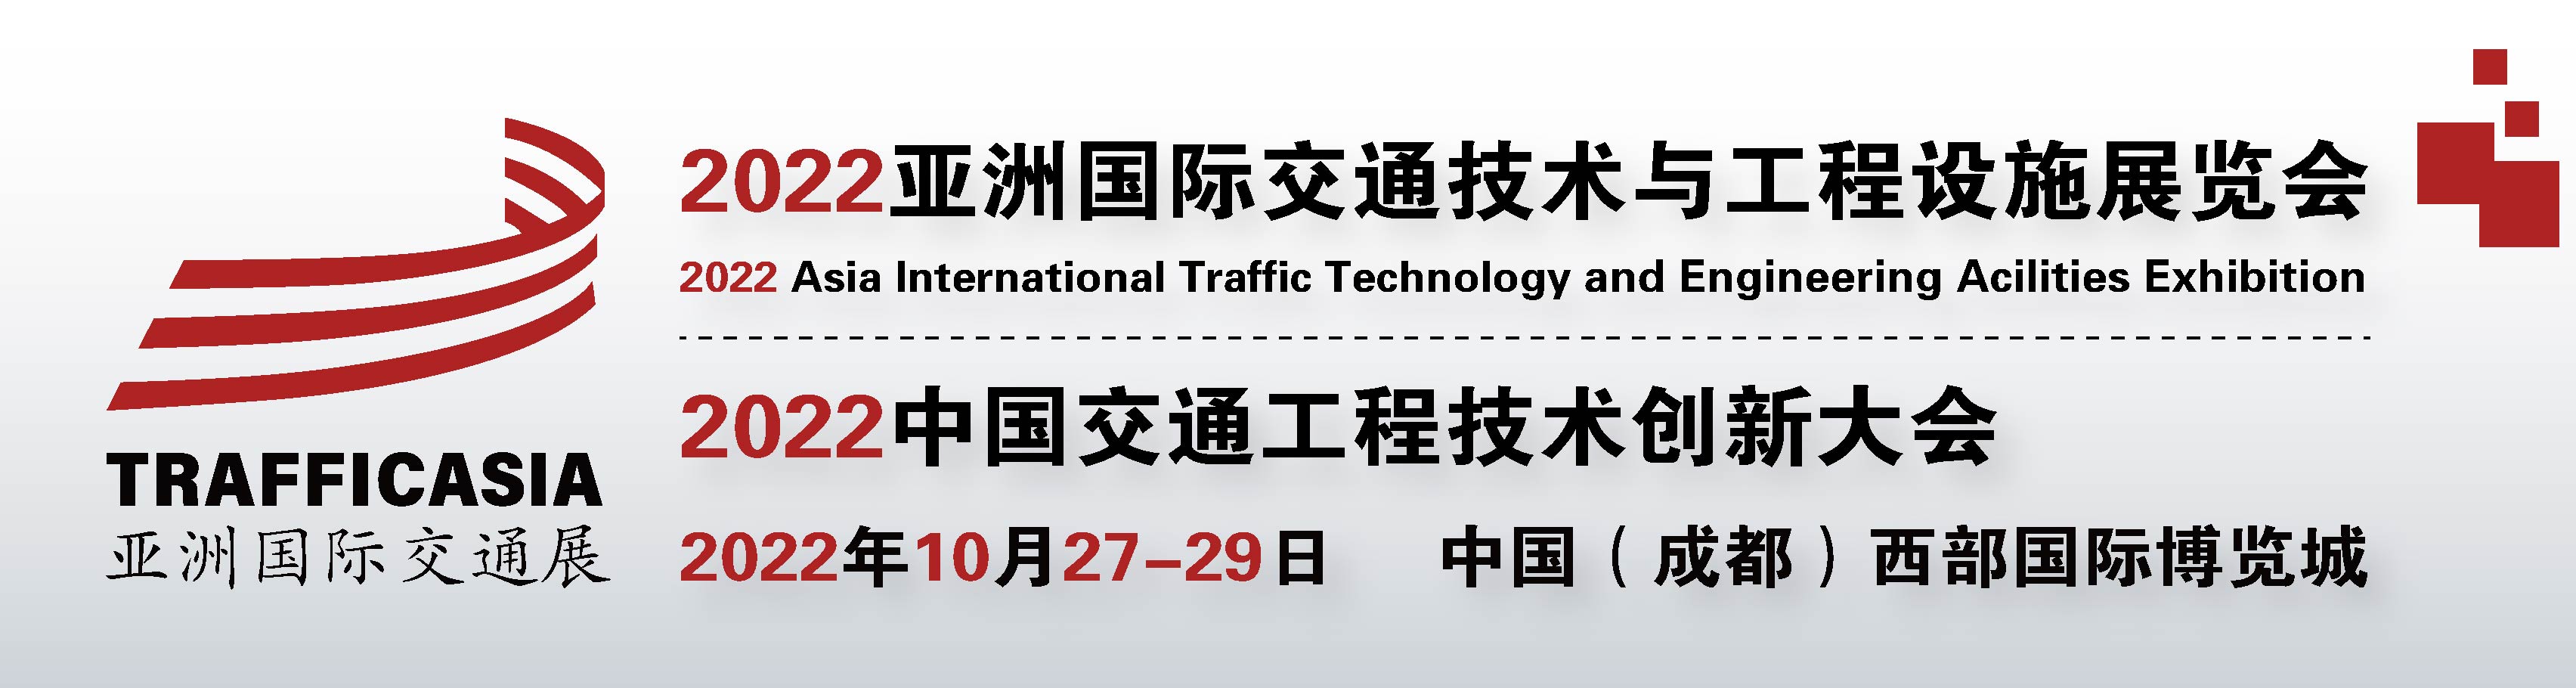 TRAFFICASIA2022亚洲国际交通技术与工程设施展览会展会特点